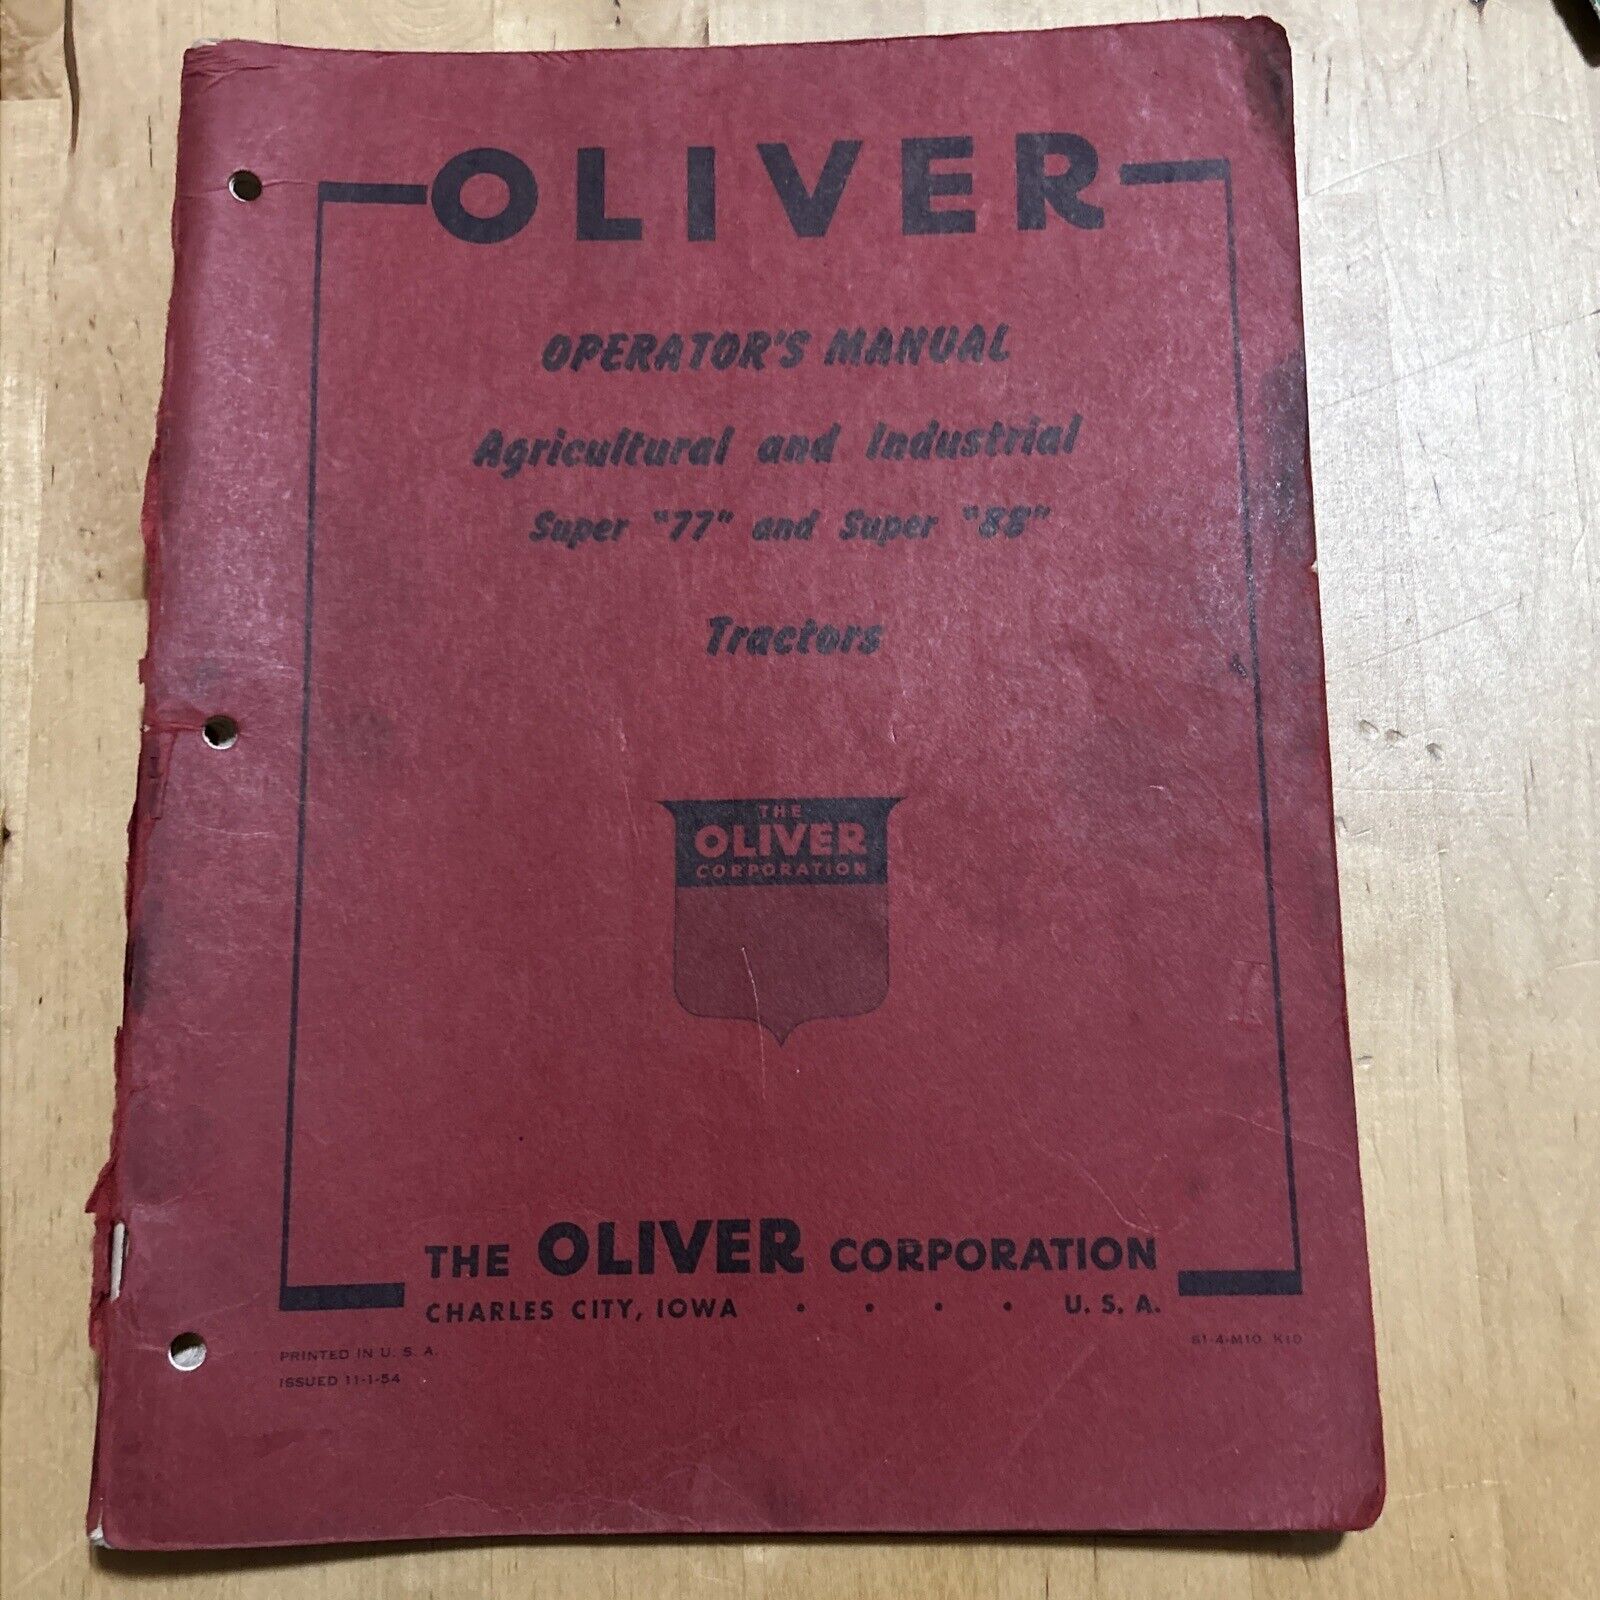 Vintage Oliver Super 77 and Super 88 Operators Manual Dated 11-1-54